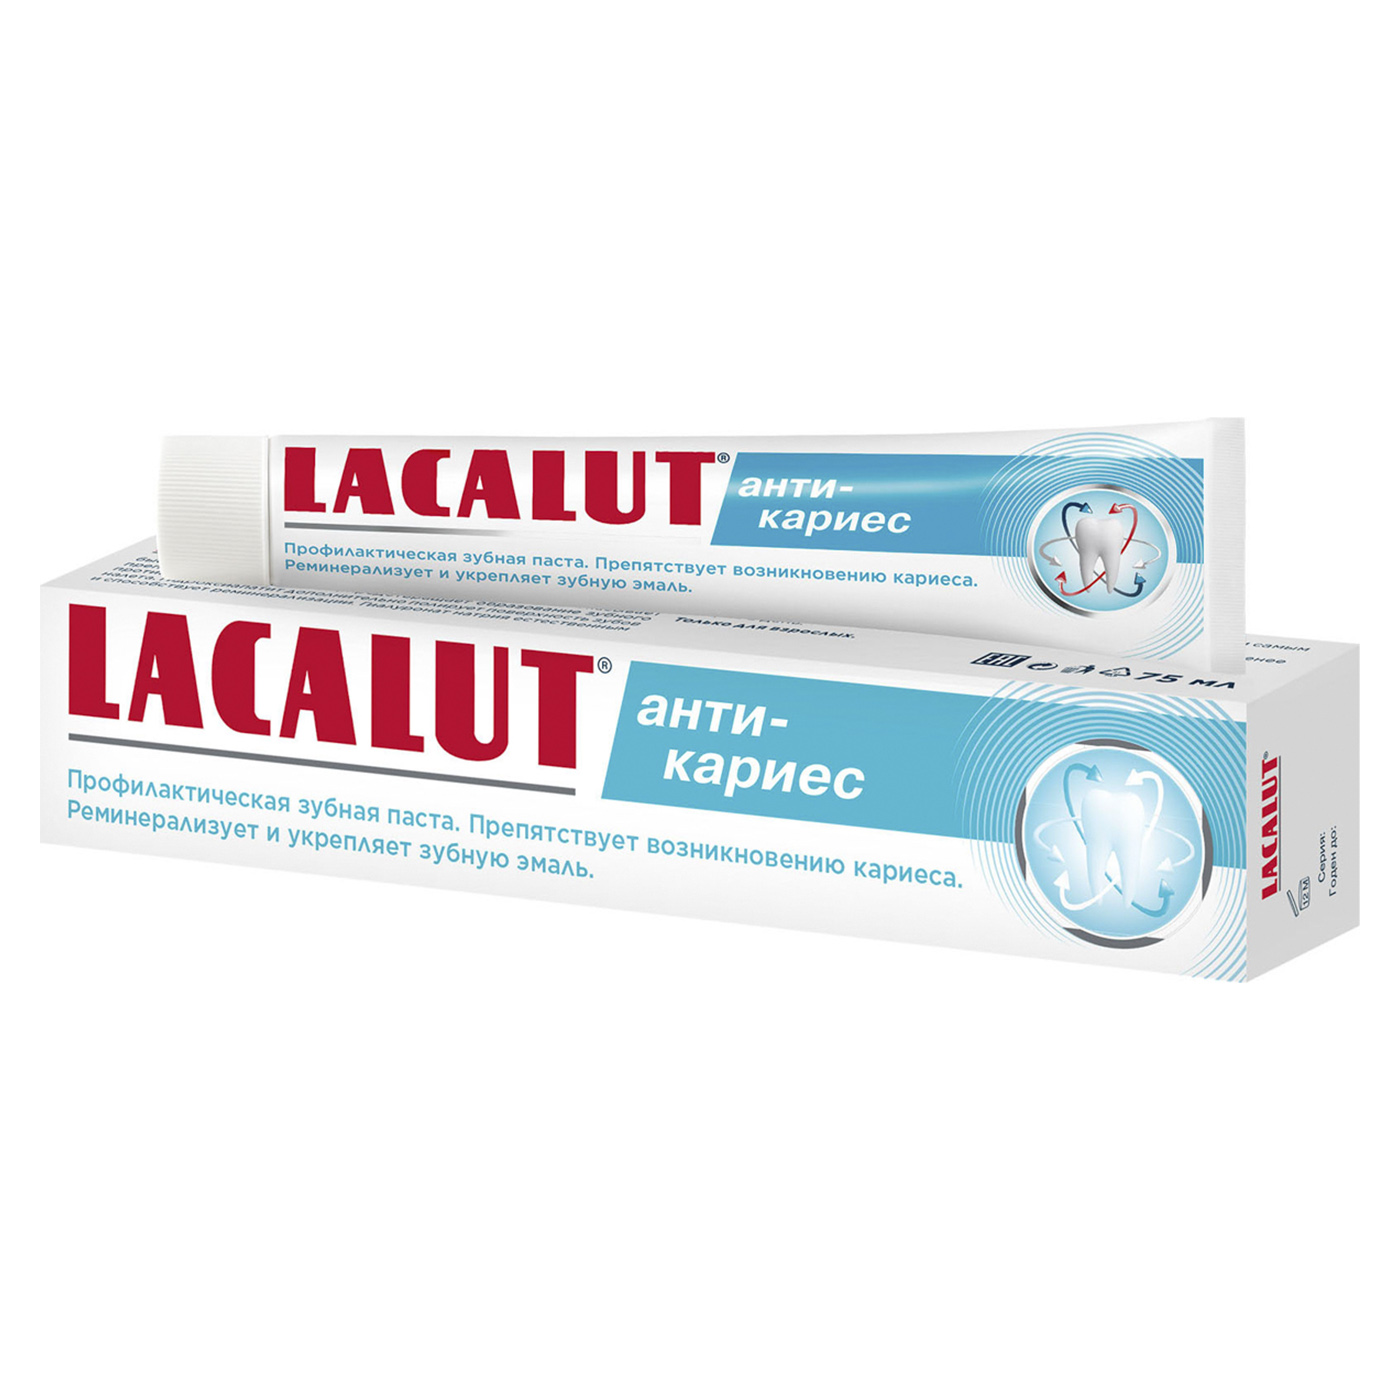 Lacalut Зубная паста Анти- кариес (Lacalut, Зубные пасты)